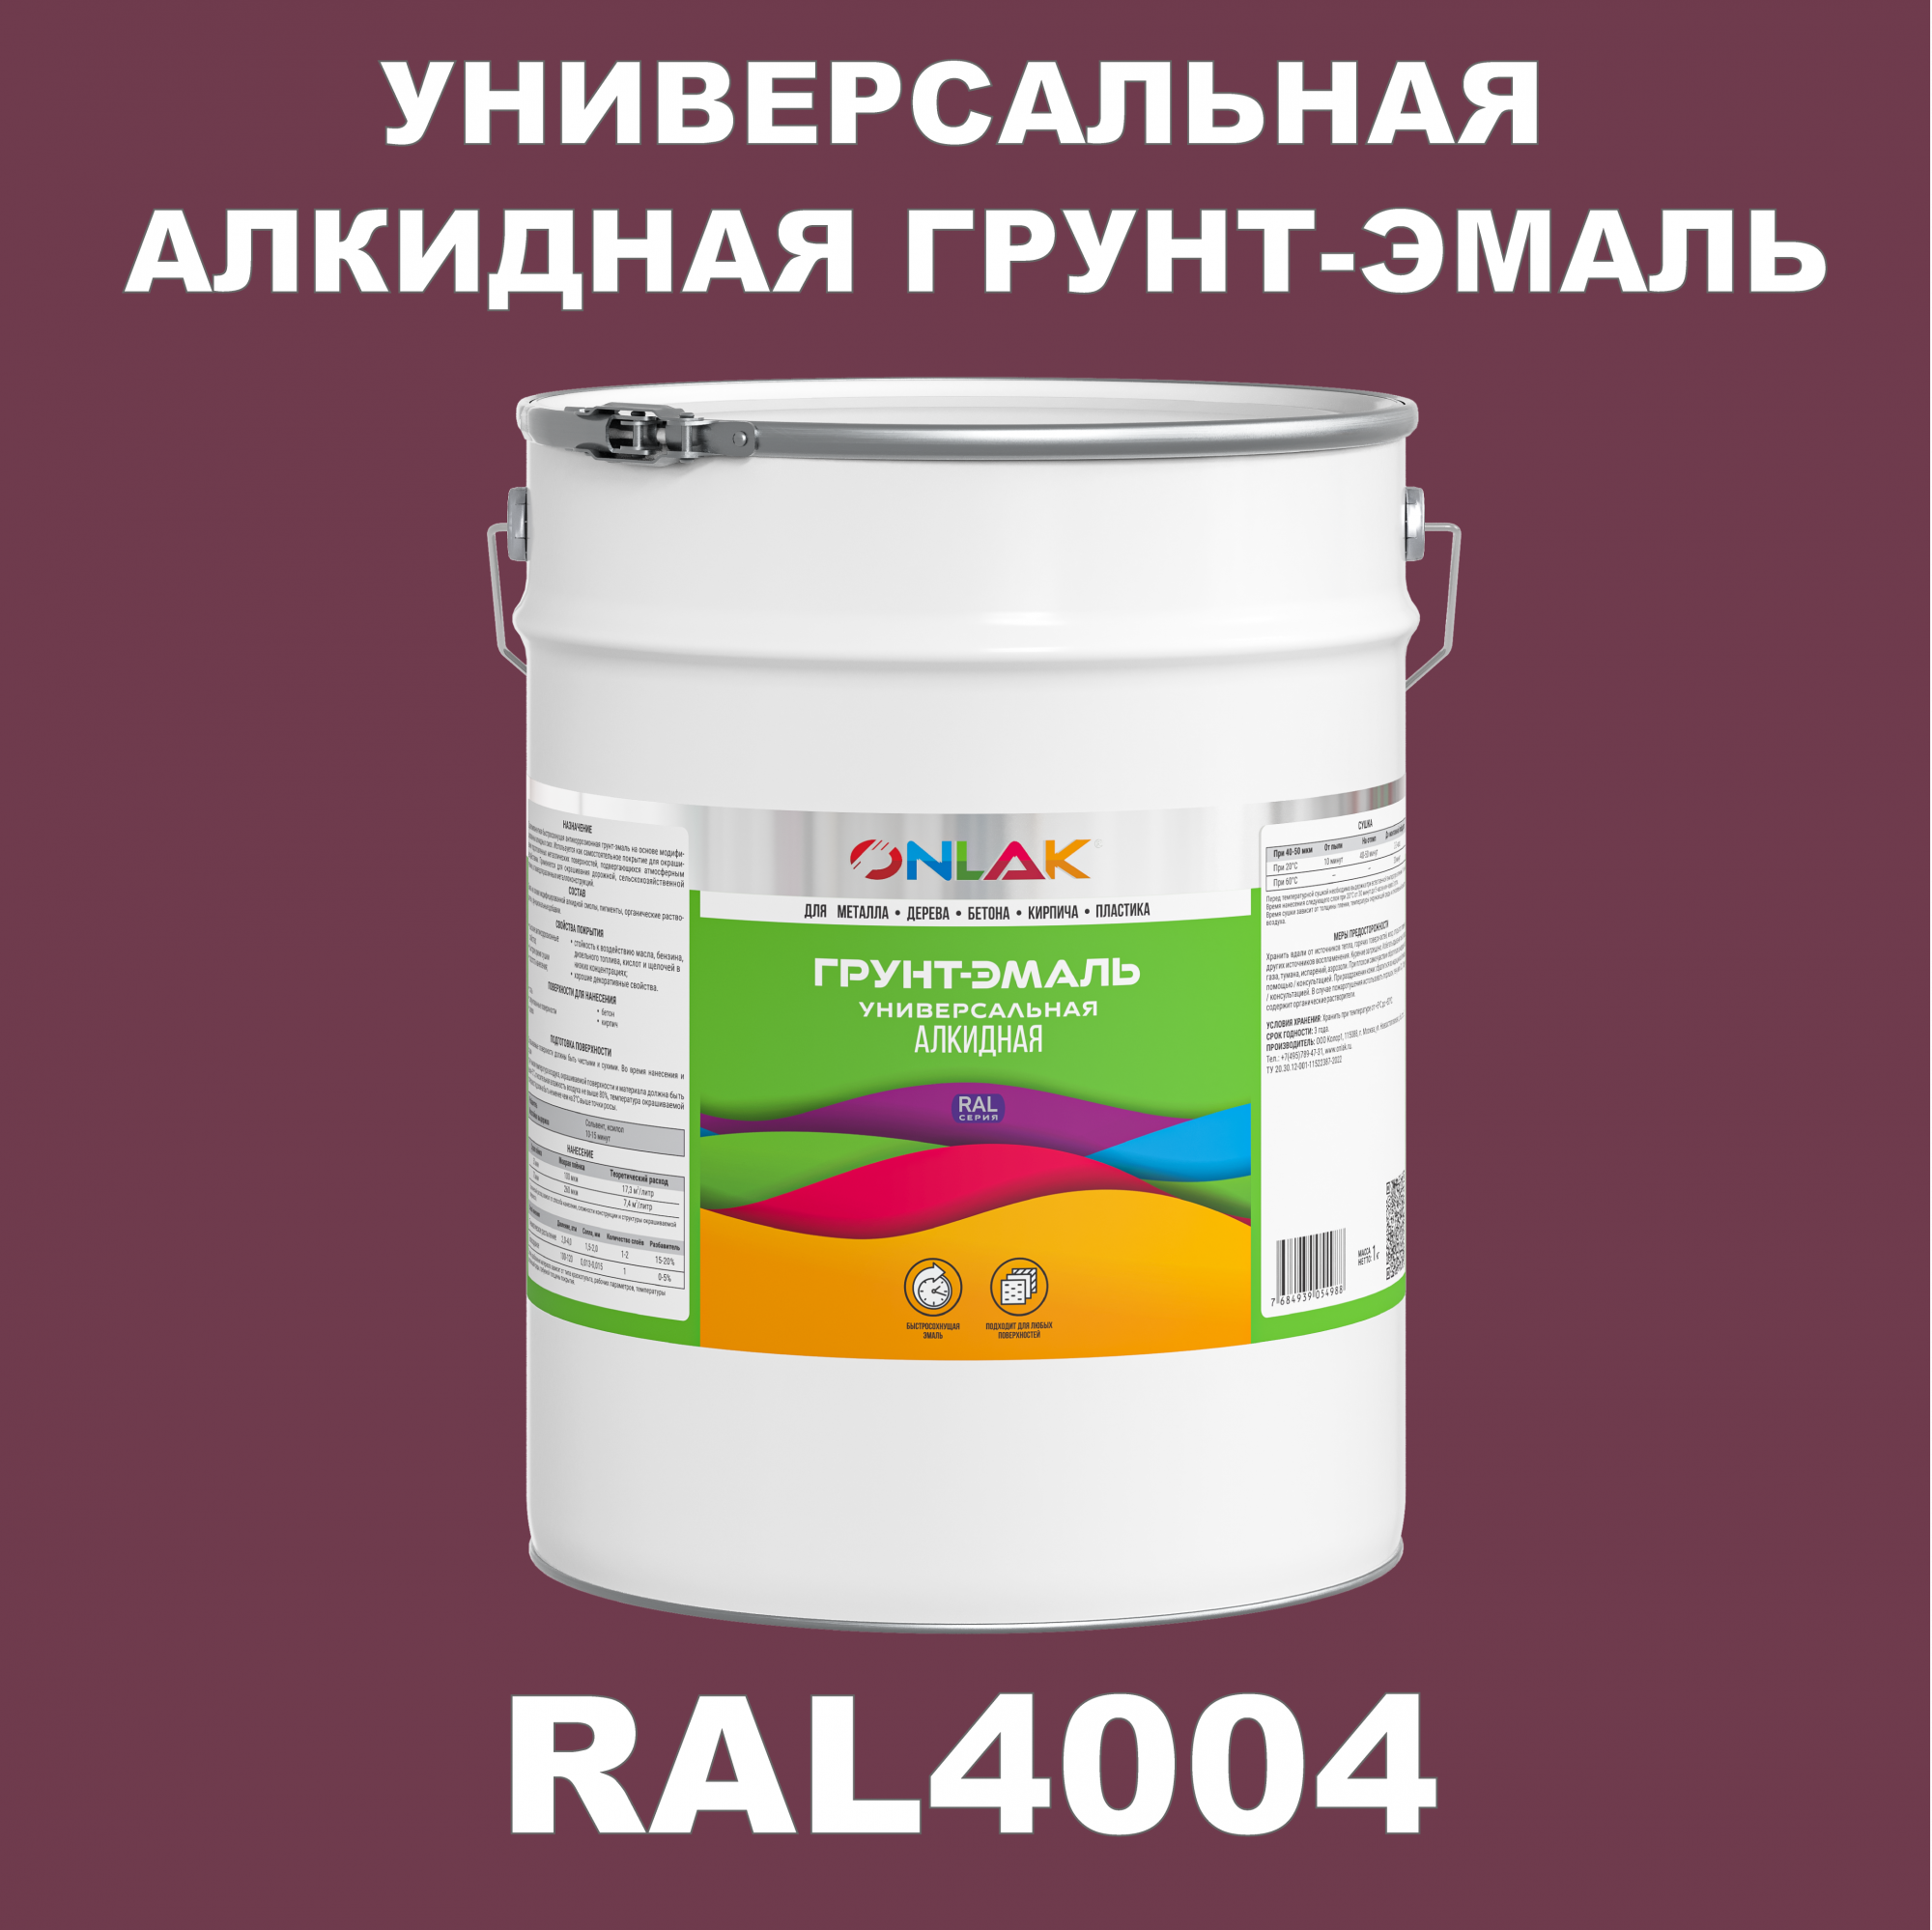 Грунт-эмаль ONLAK 1К RAL4004 антикоррозионная алкидная по металлу по ржавчине 20 кг антикоррозионная грунт эмаль onlak ral4001 фиолетовый 656 мл